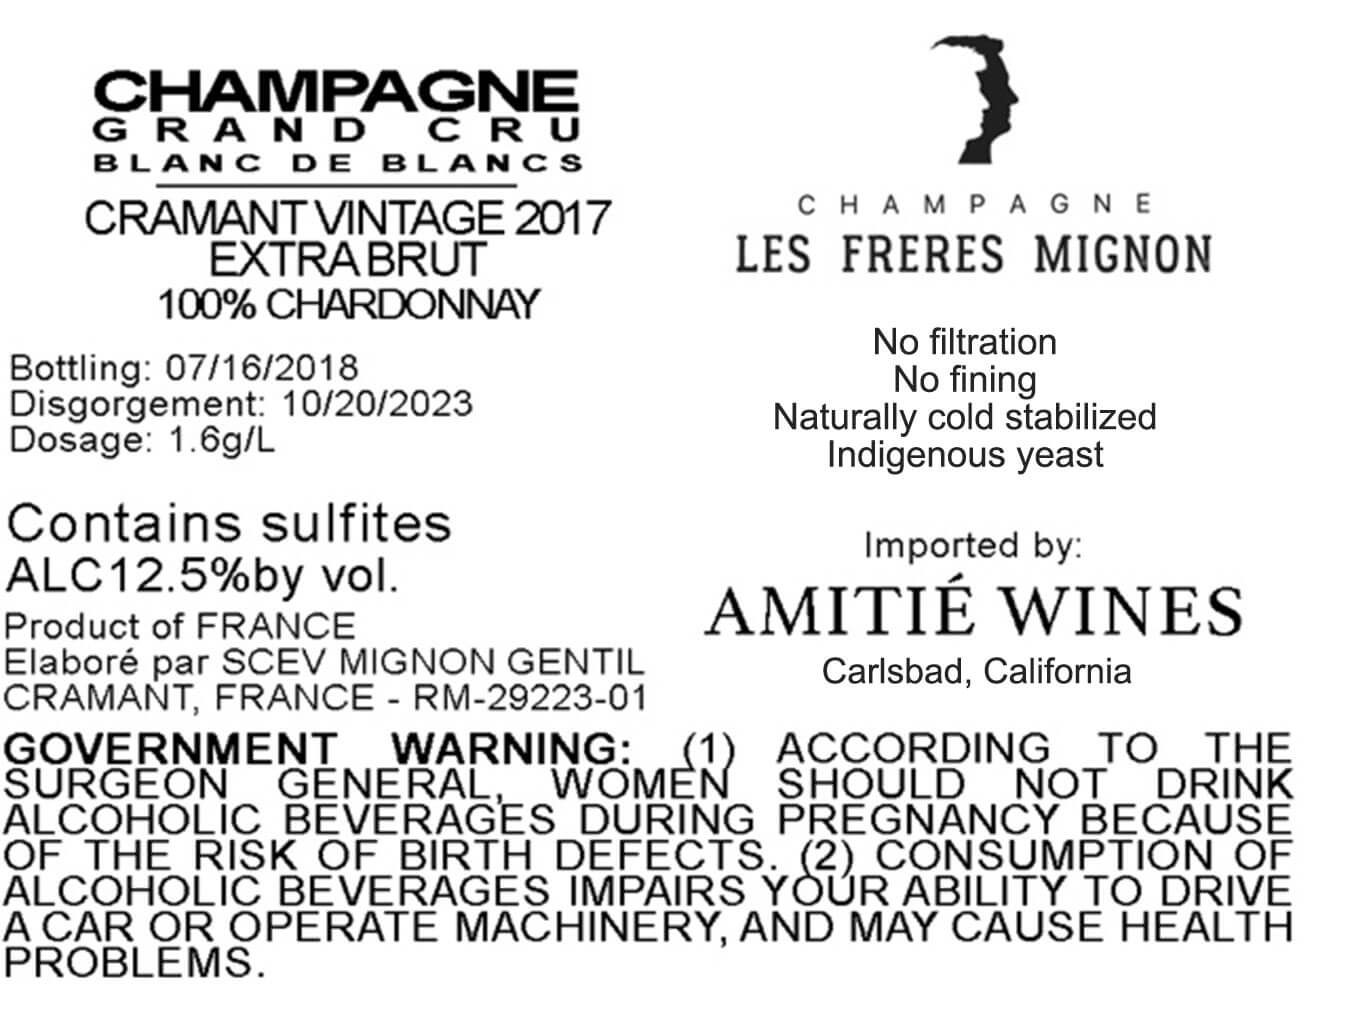 Les Freres Mignon 2017 'Terroir de Cramant' Blanc des Blancs Champagne